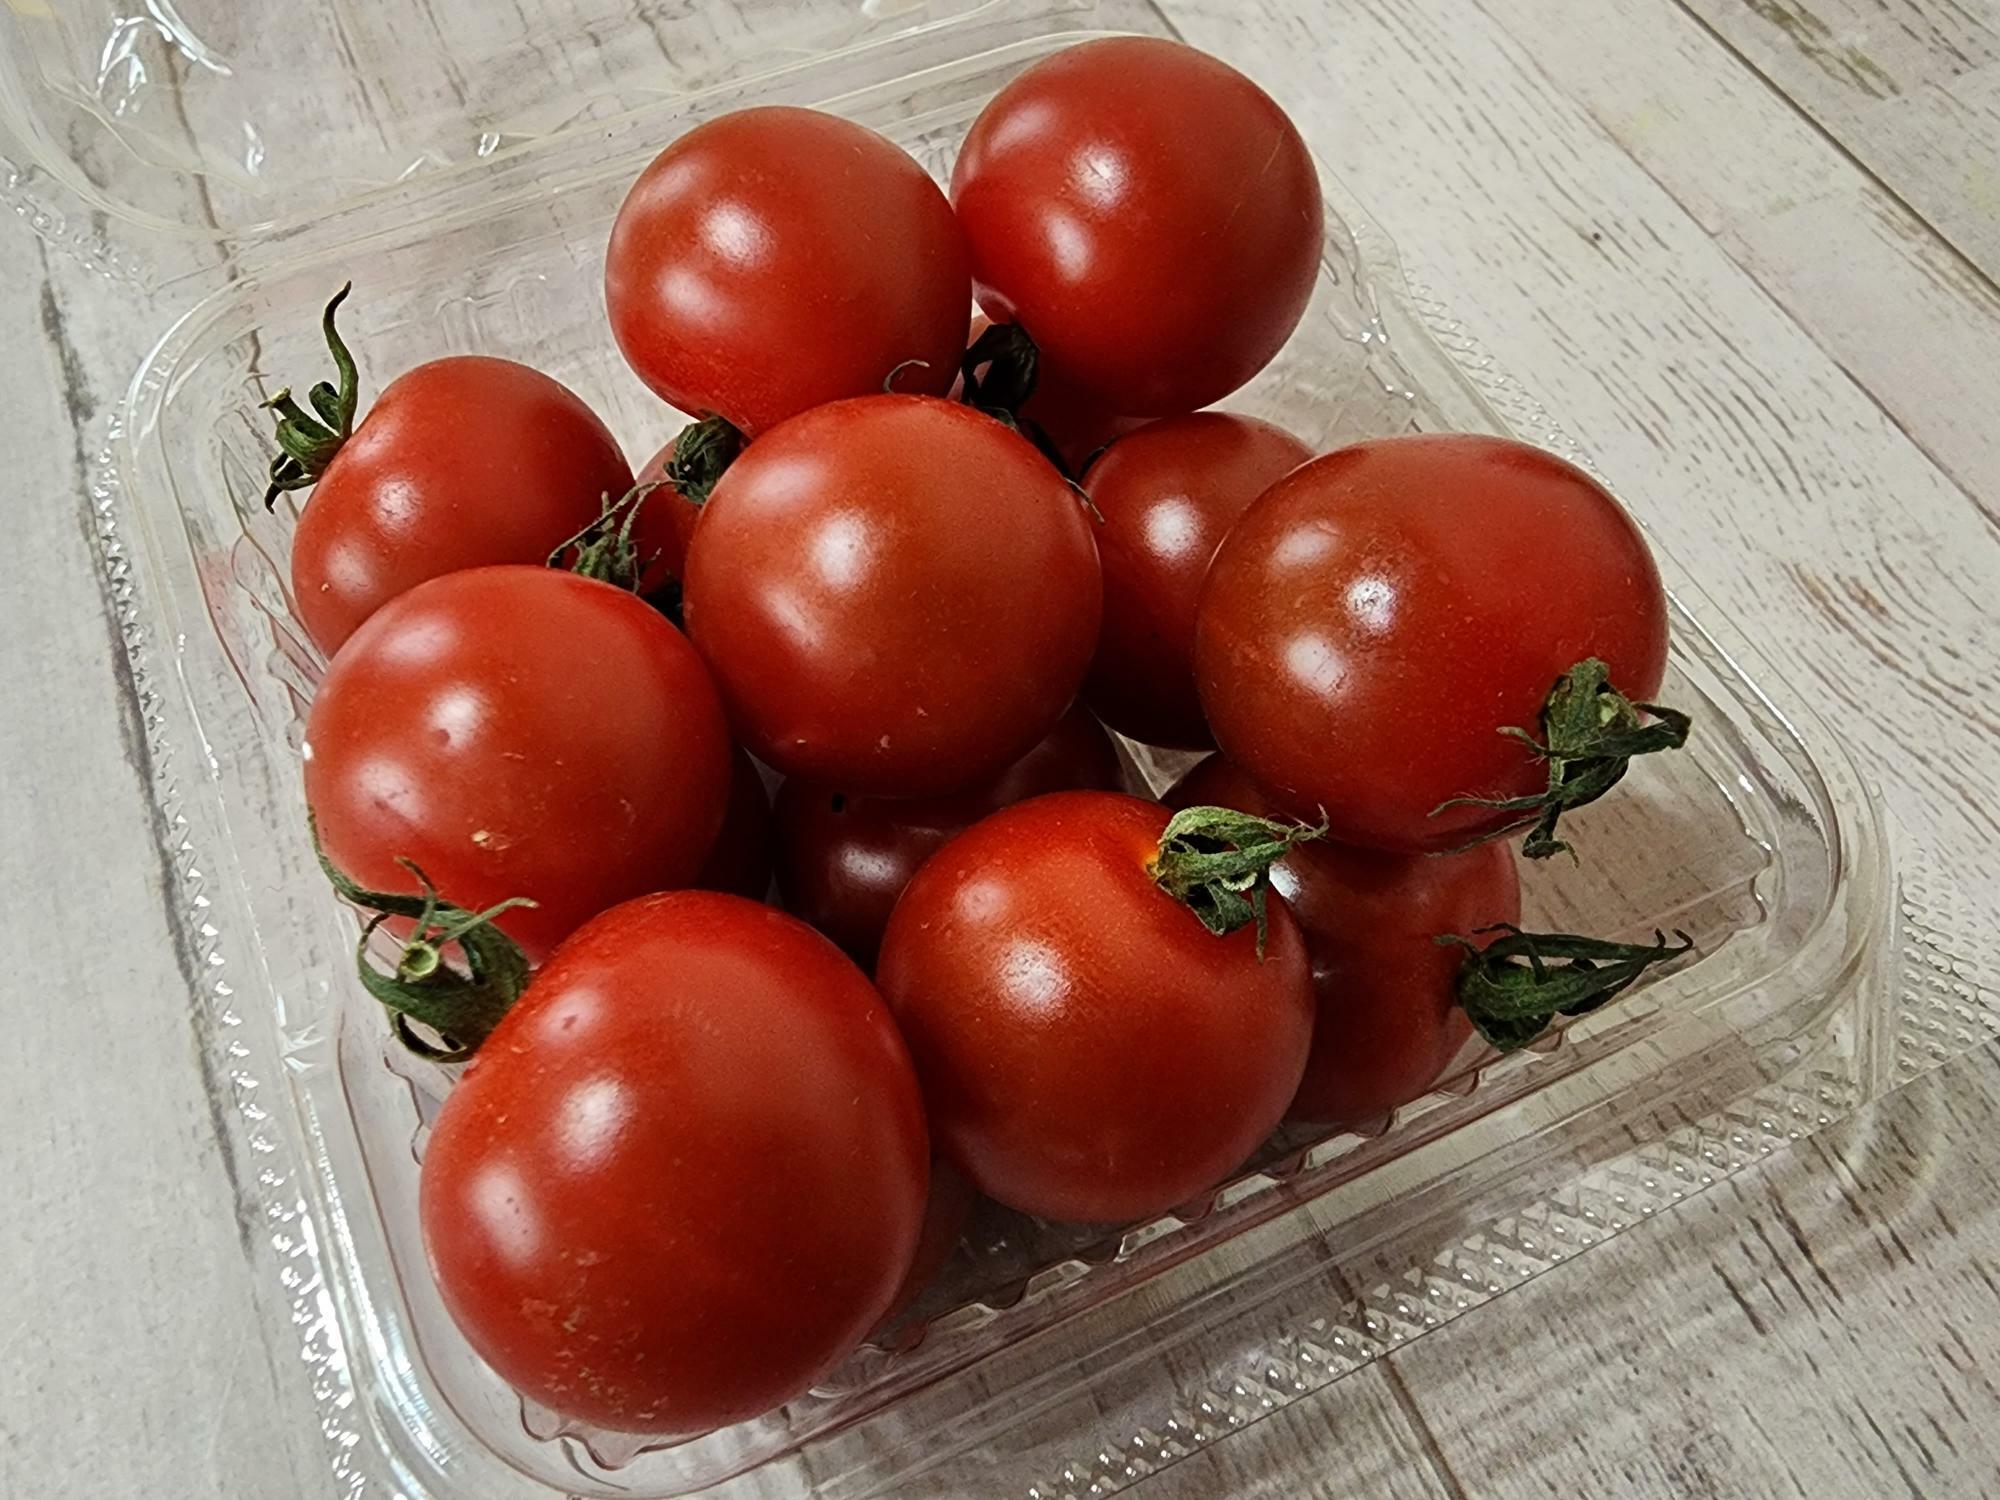 「セブン-イレブン 徳島金沢１丁目店」で購入した徳島県産野菜「トマト」。